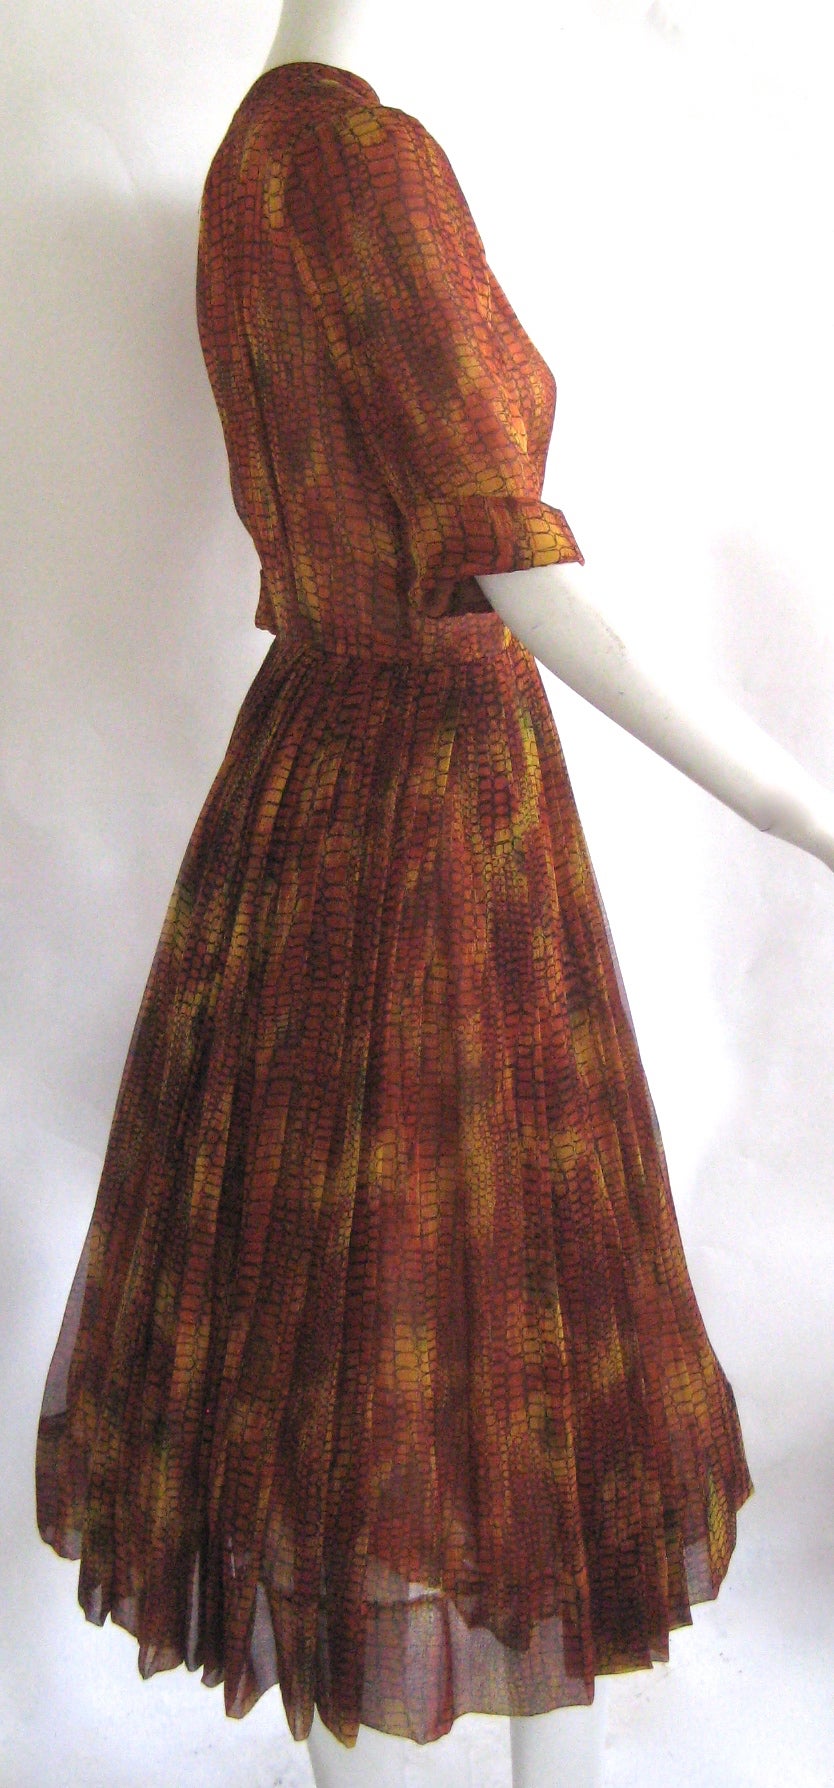 Women's 1950s Holly Hoelscher California Shirt Dress